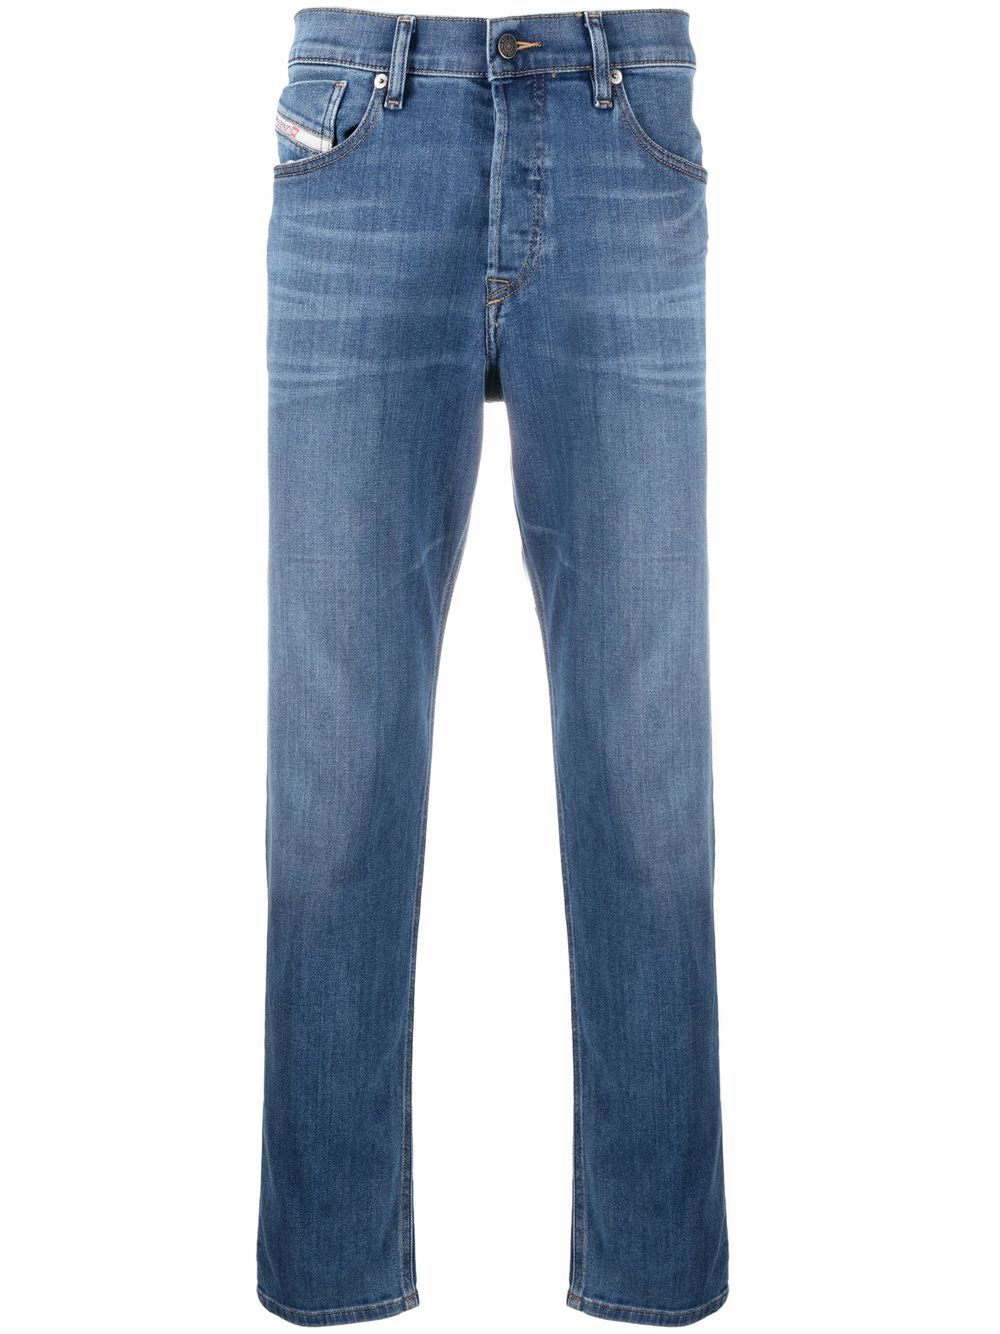 фото Diesel прямые джинсы d-fining с заниженной талией